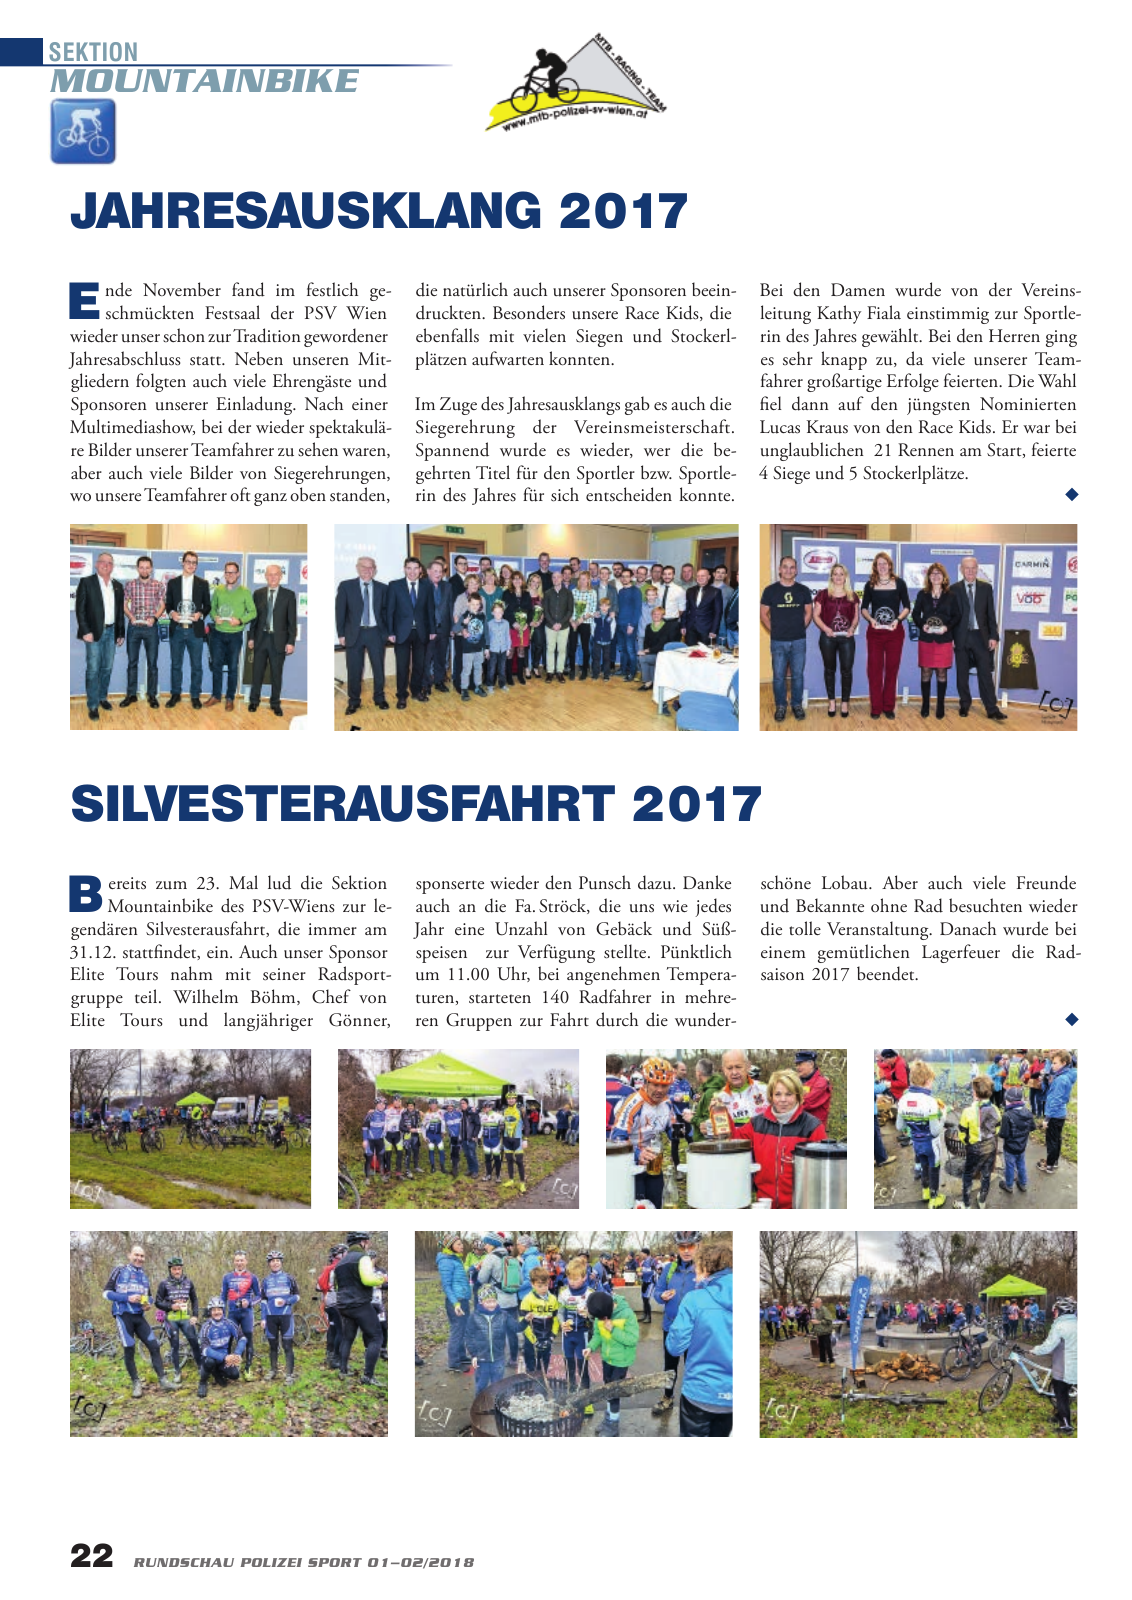 Vorschau Rundschau Polizei Sport 01-02/2018 Seite 22